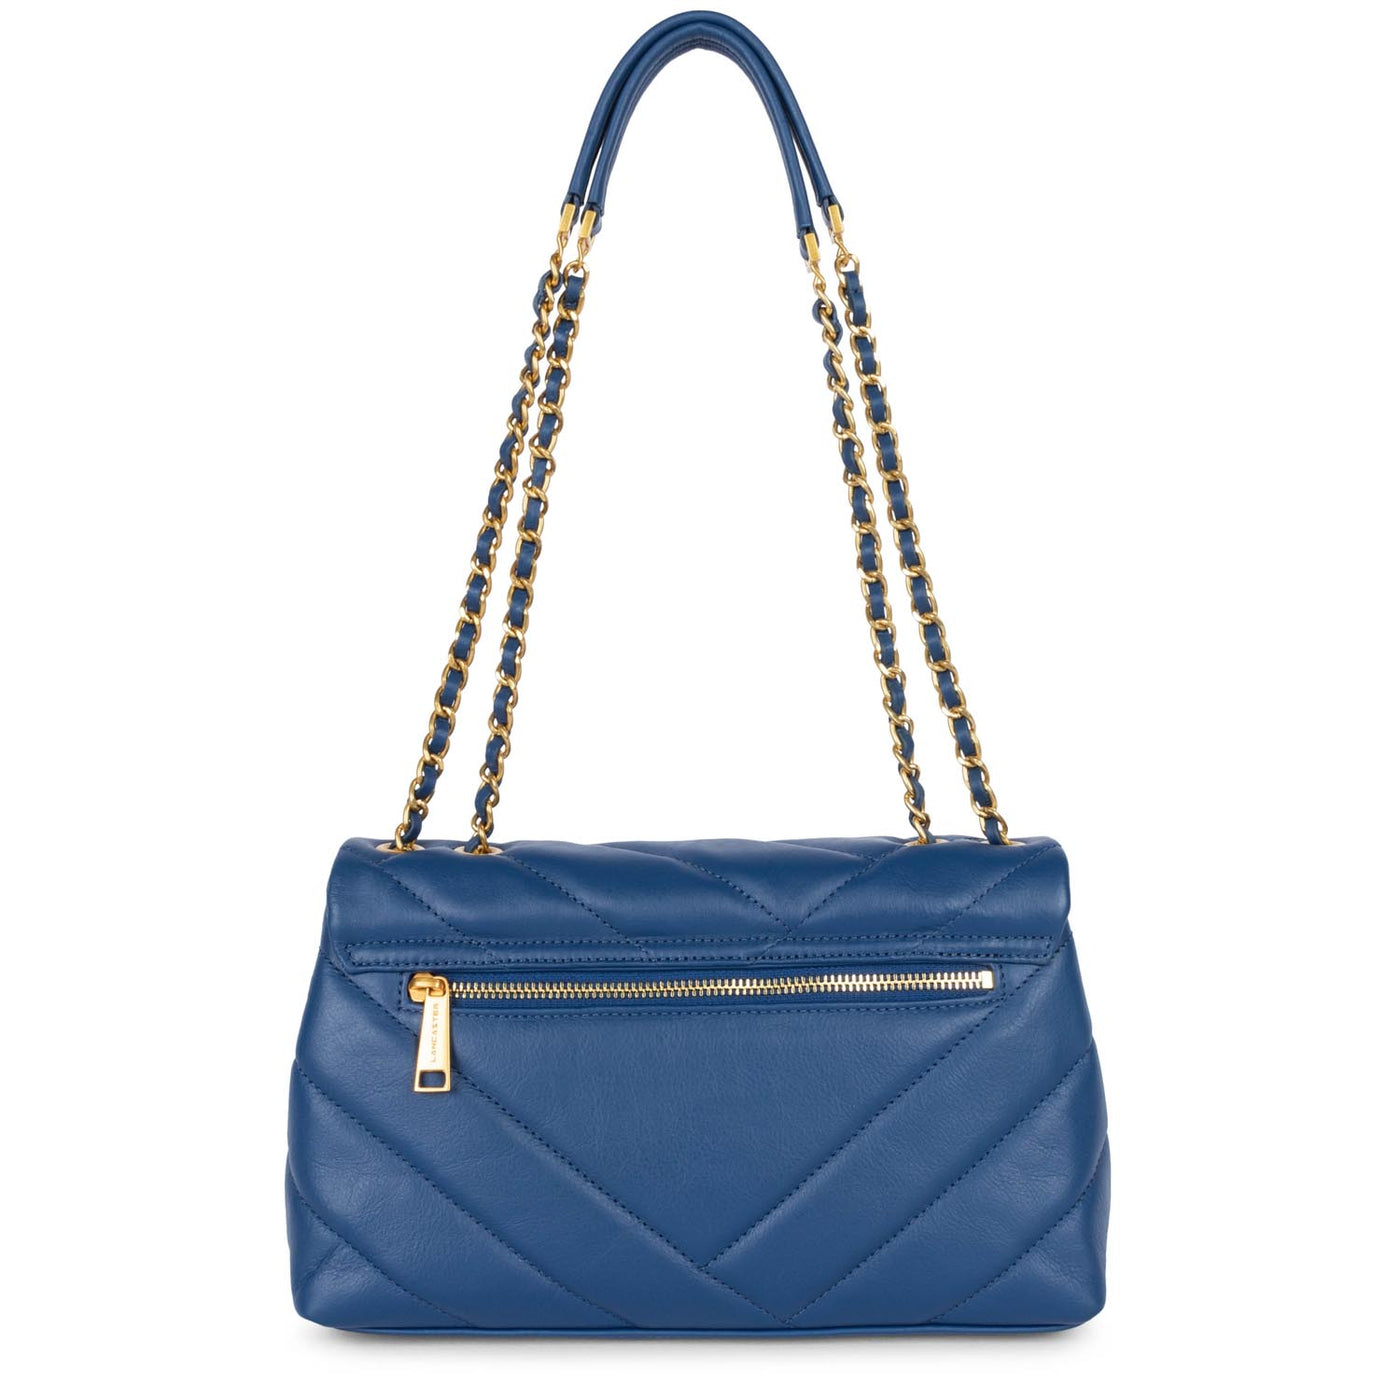 sac besace - soft matelassé #couleur_bleu